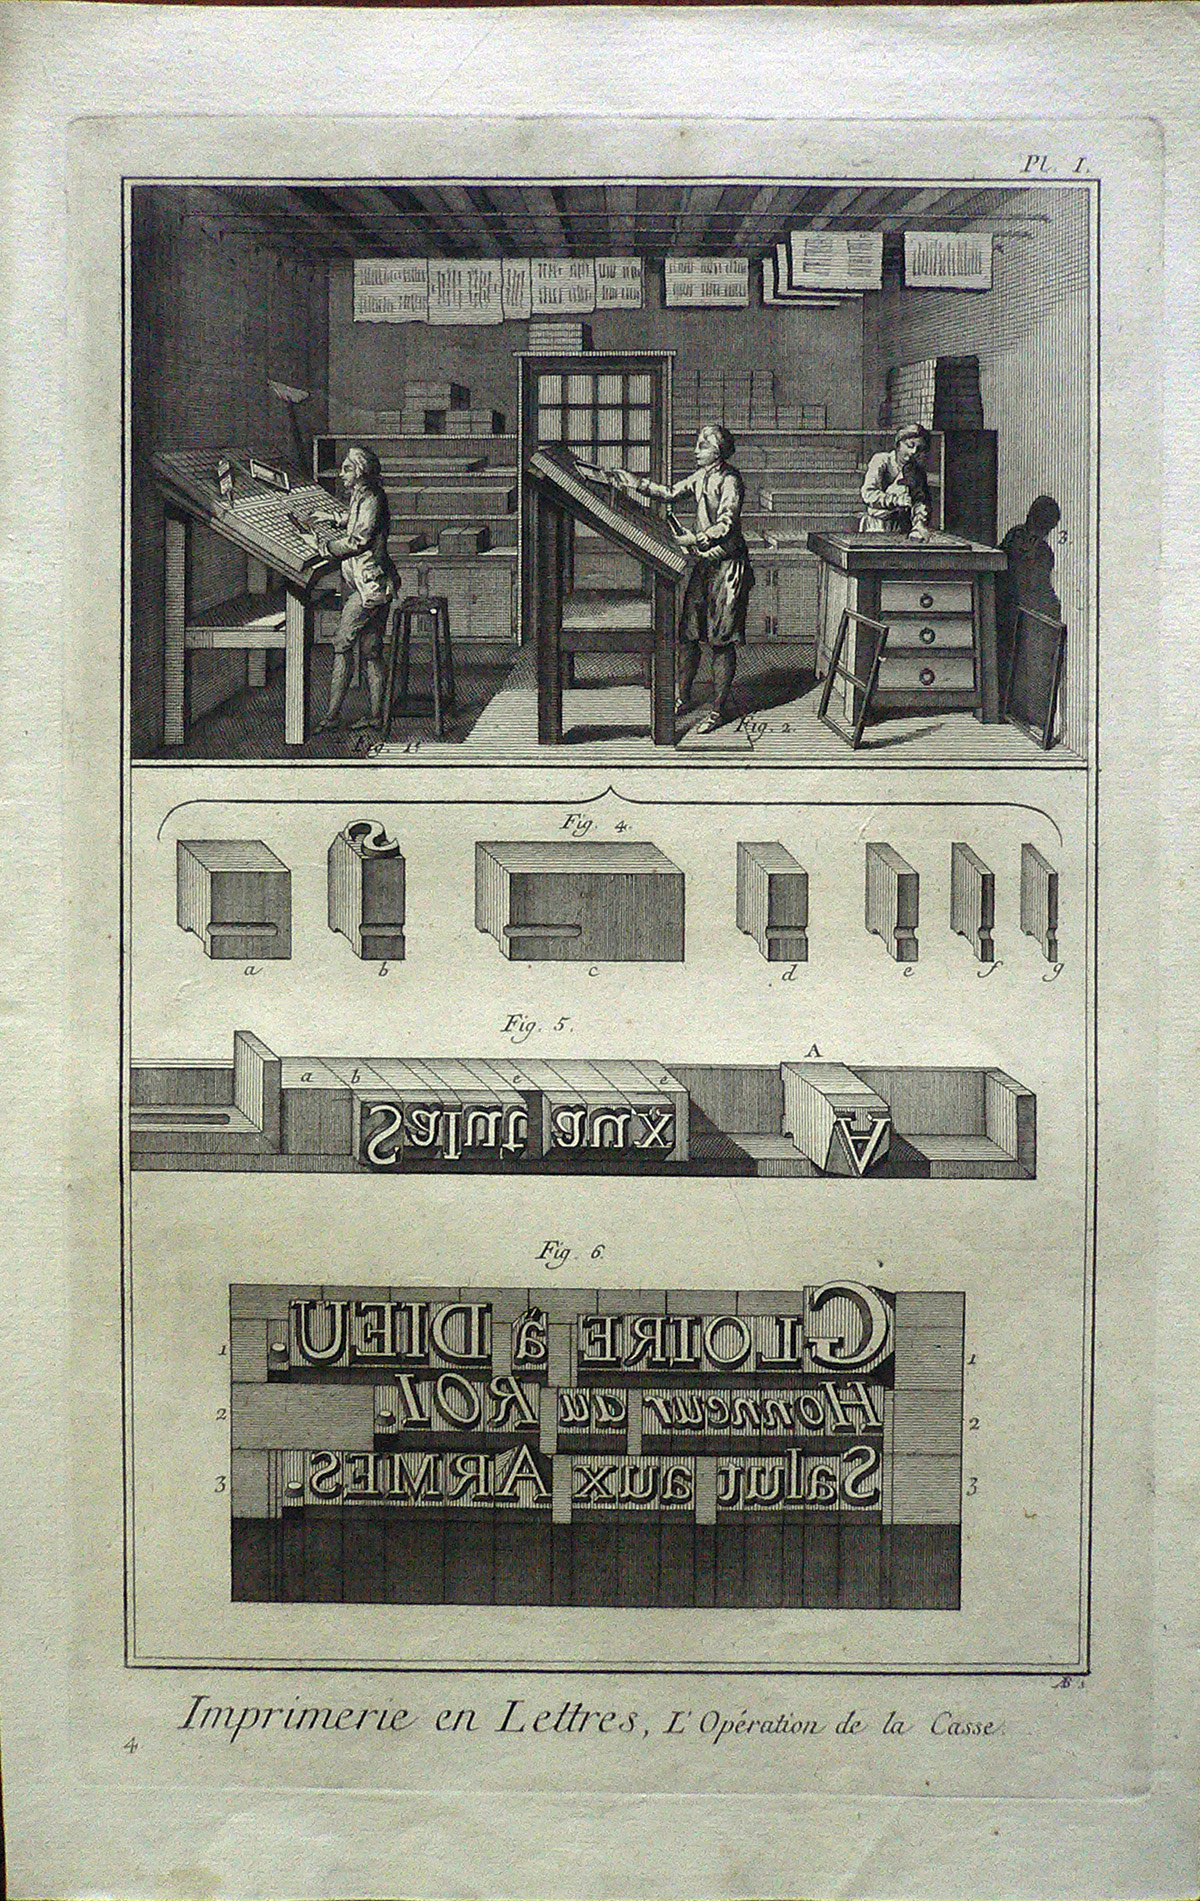 CCLXXIX, 135 | Imprimerie en Lettres, L'Opération de la Casse.